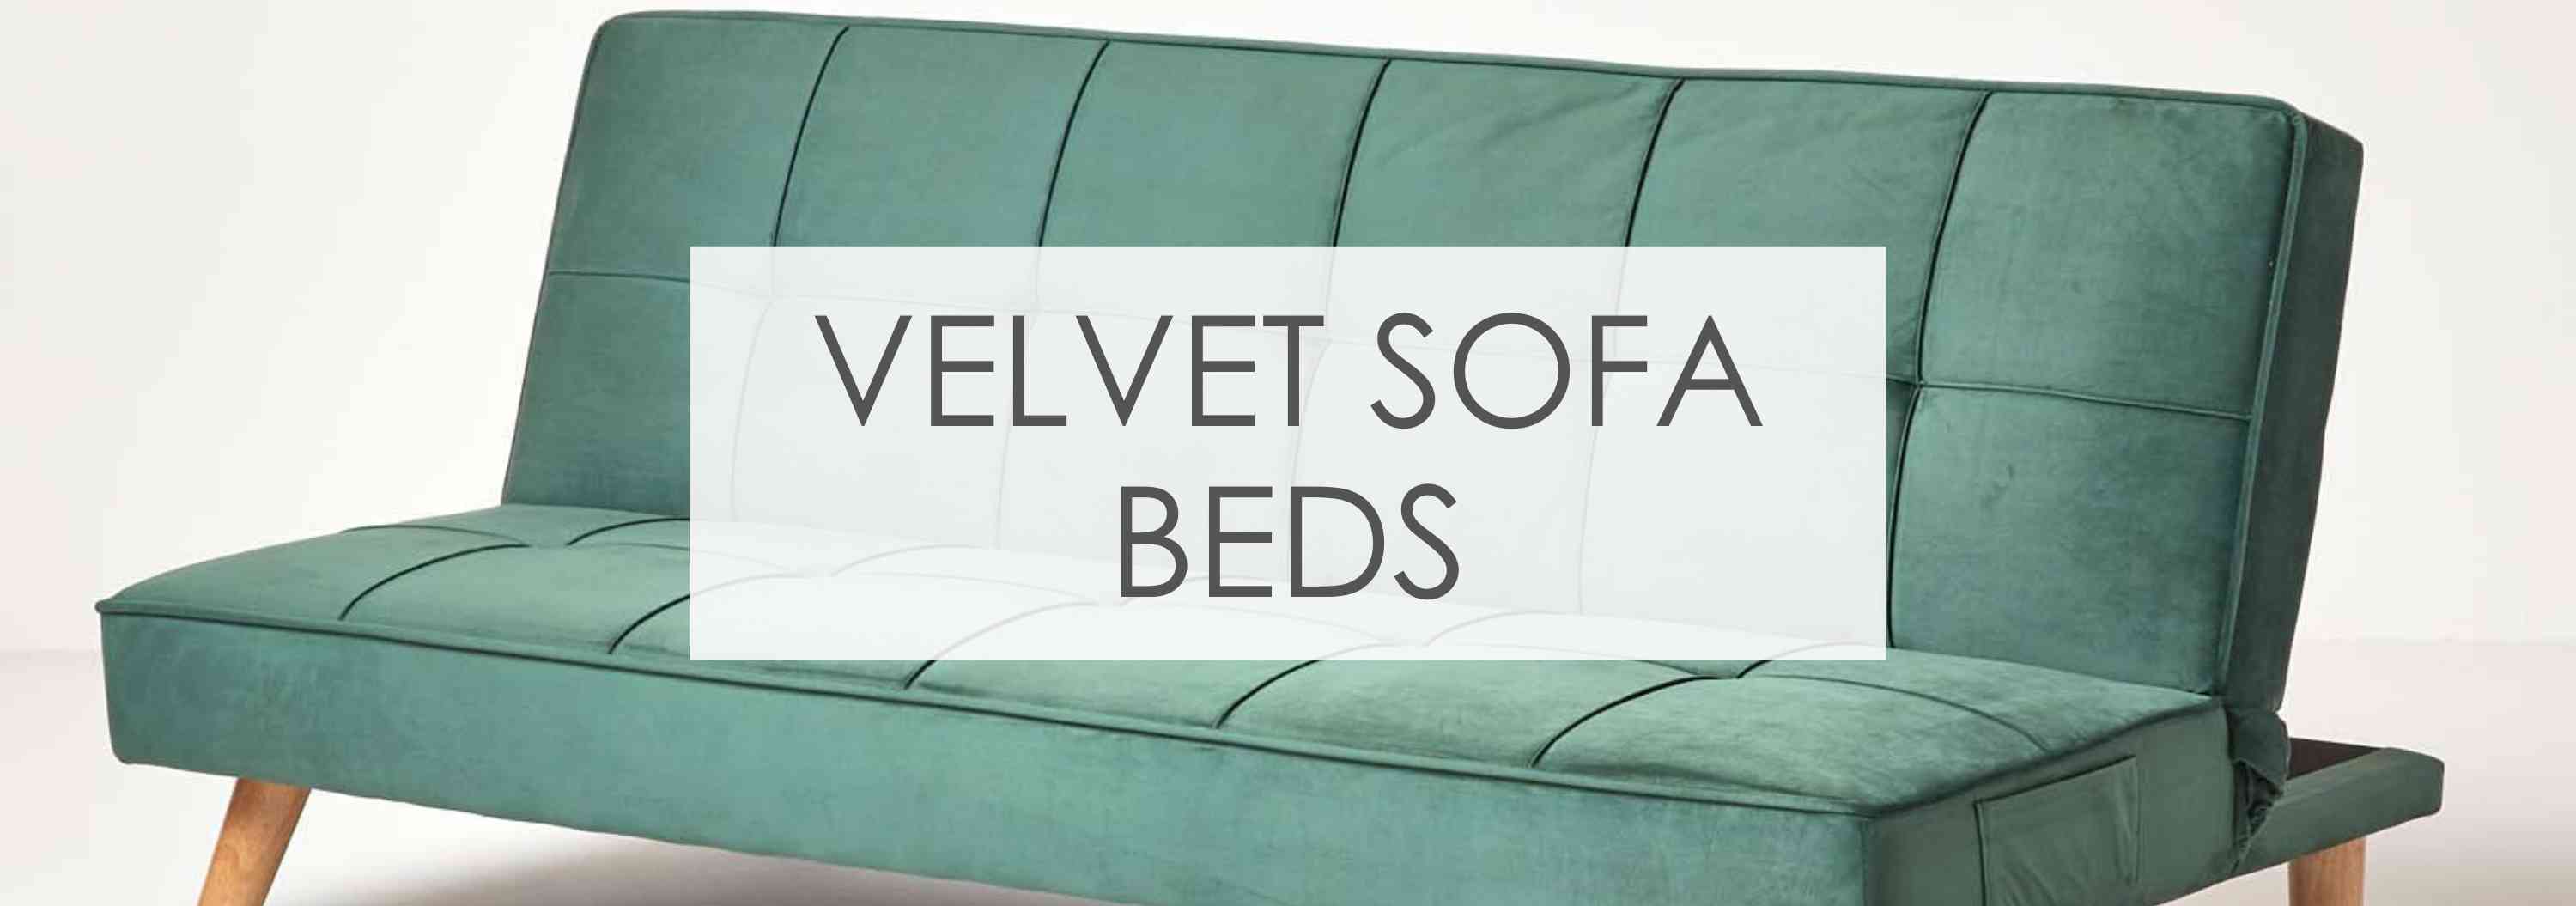 Velvet sofa beds banner